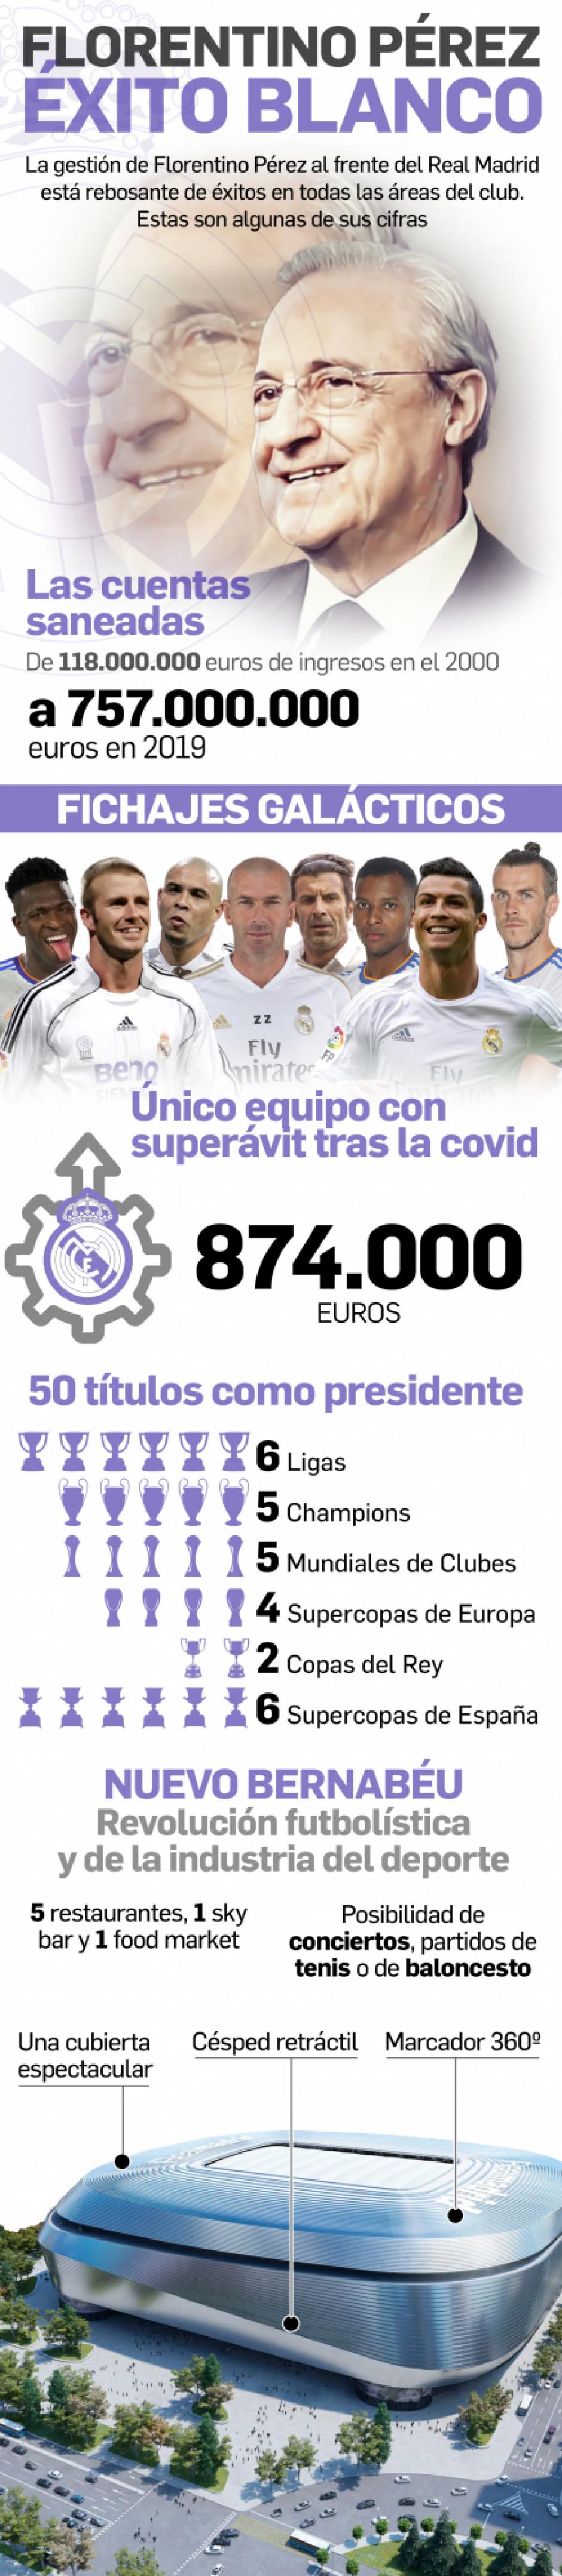 Los más de 20 años de Florentino Pérez en el Real Madrid